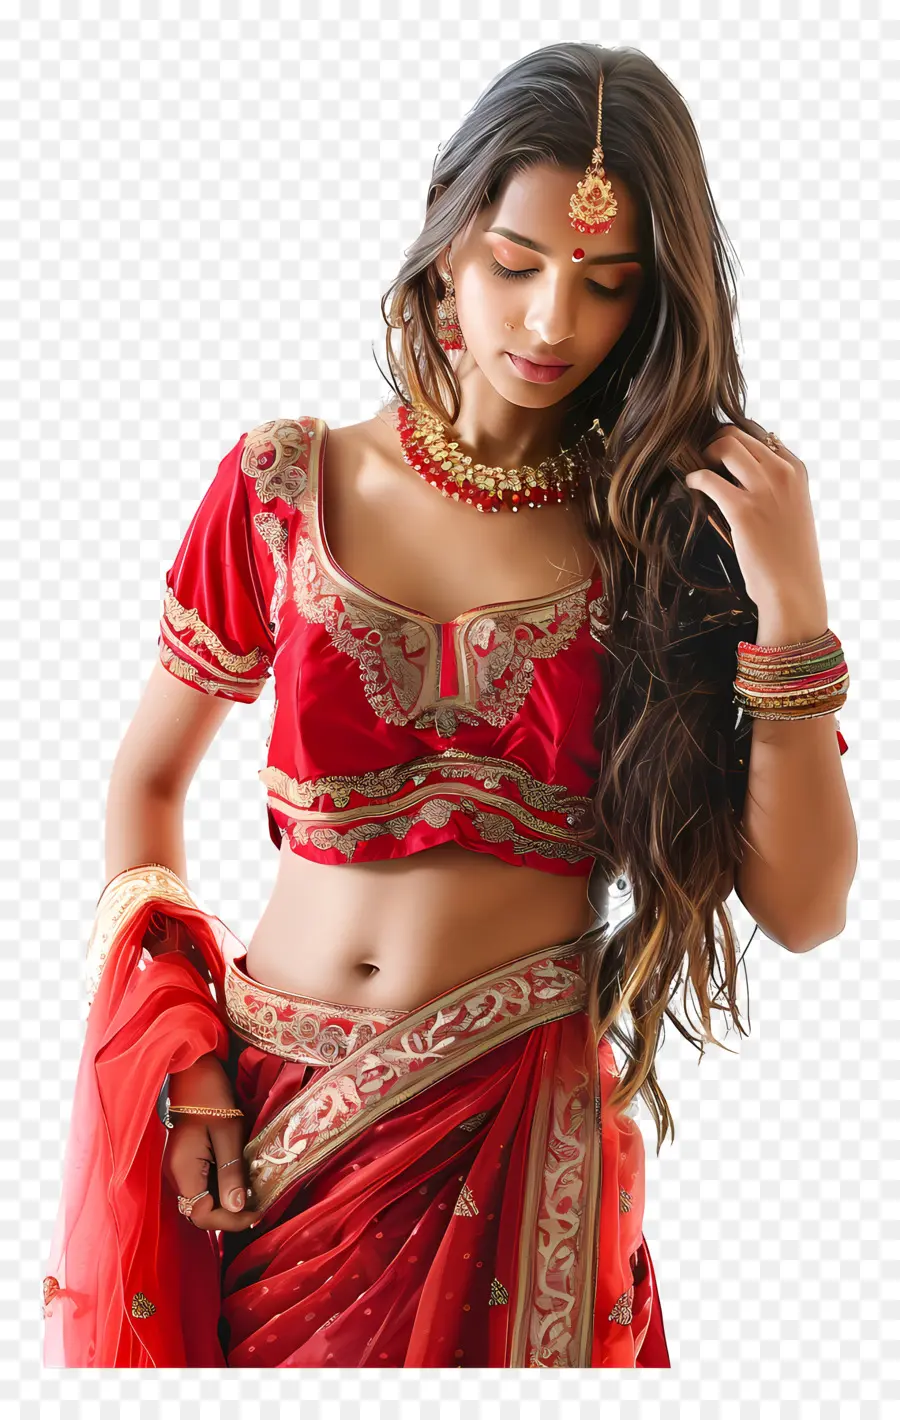 bordo dorato - Donna indiana in sari rosso e oro, elegante